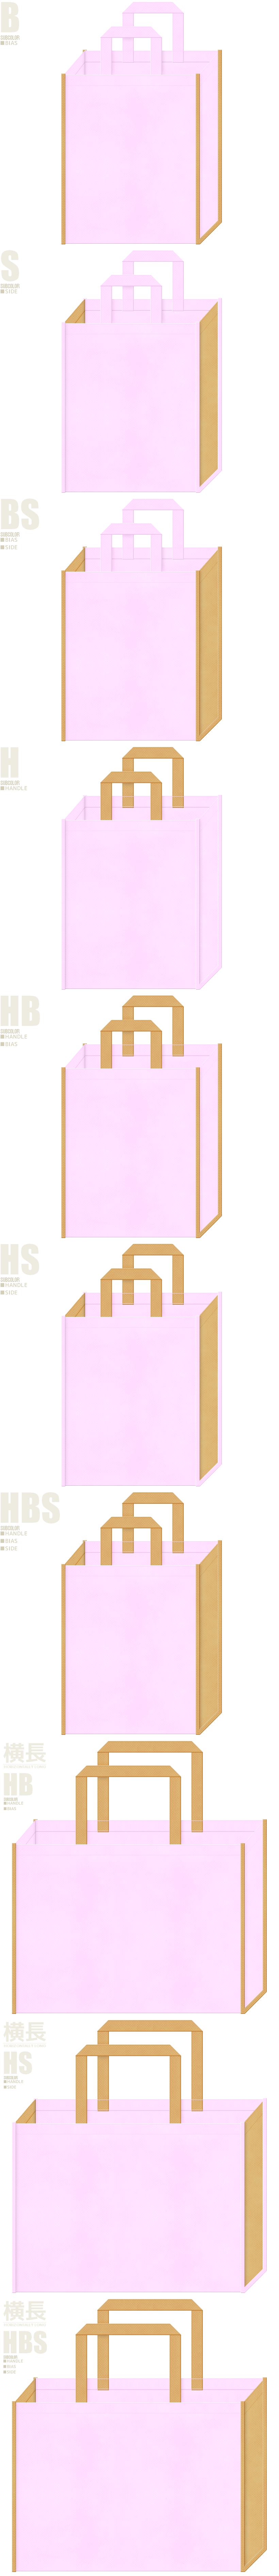 不織布バッグのカラーシミュレーション：パステルピンク色と薄黄土色の組み合わせ10種類